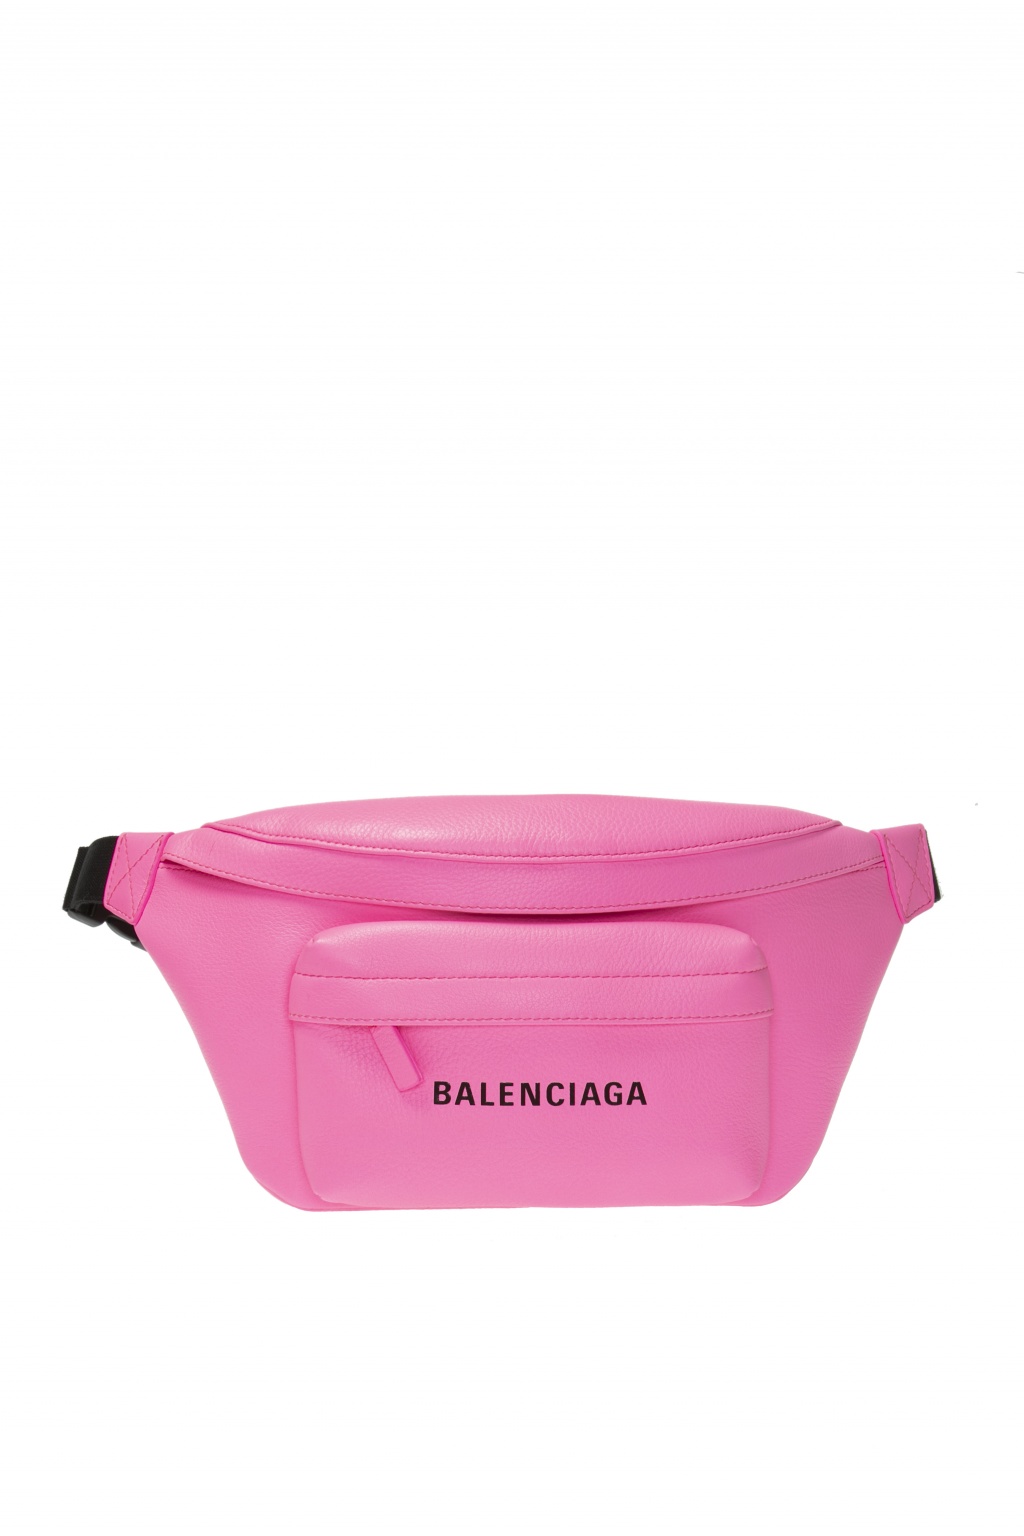 pink balenciaga fanny pack